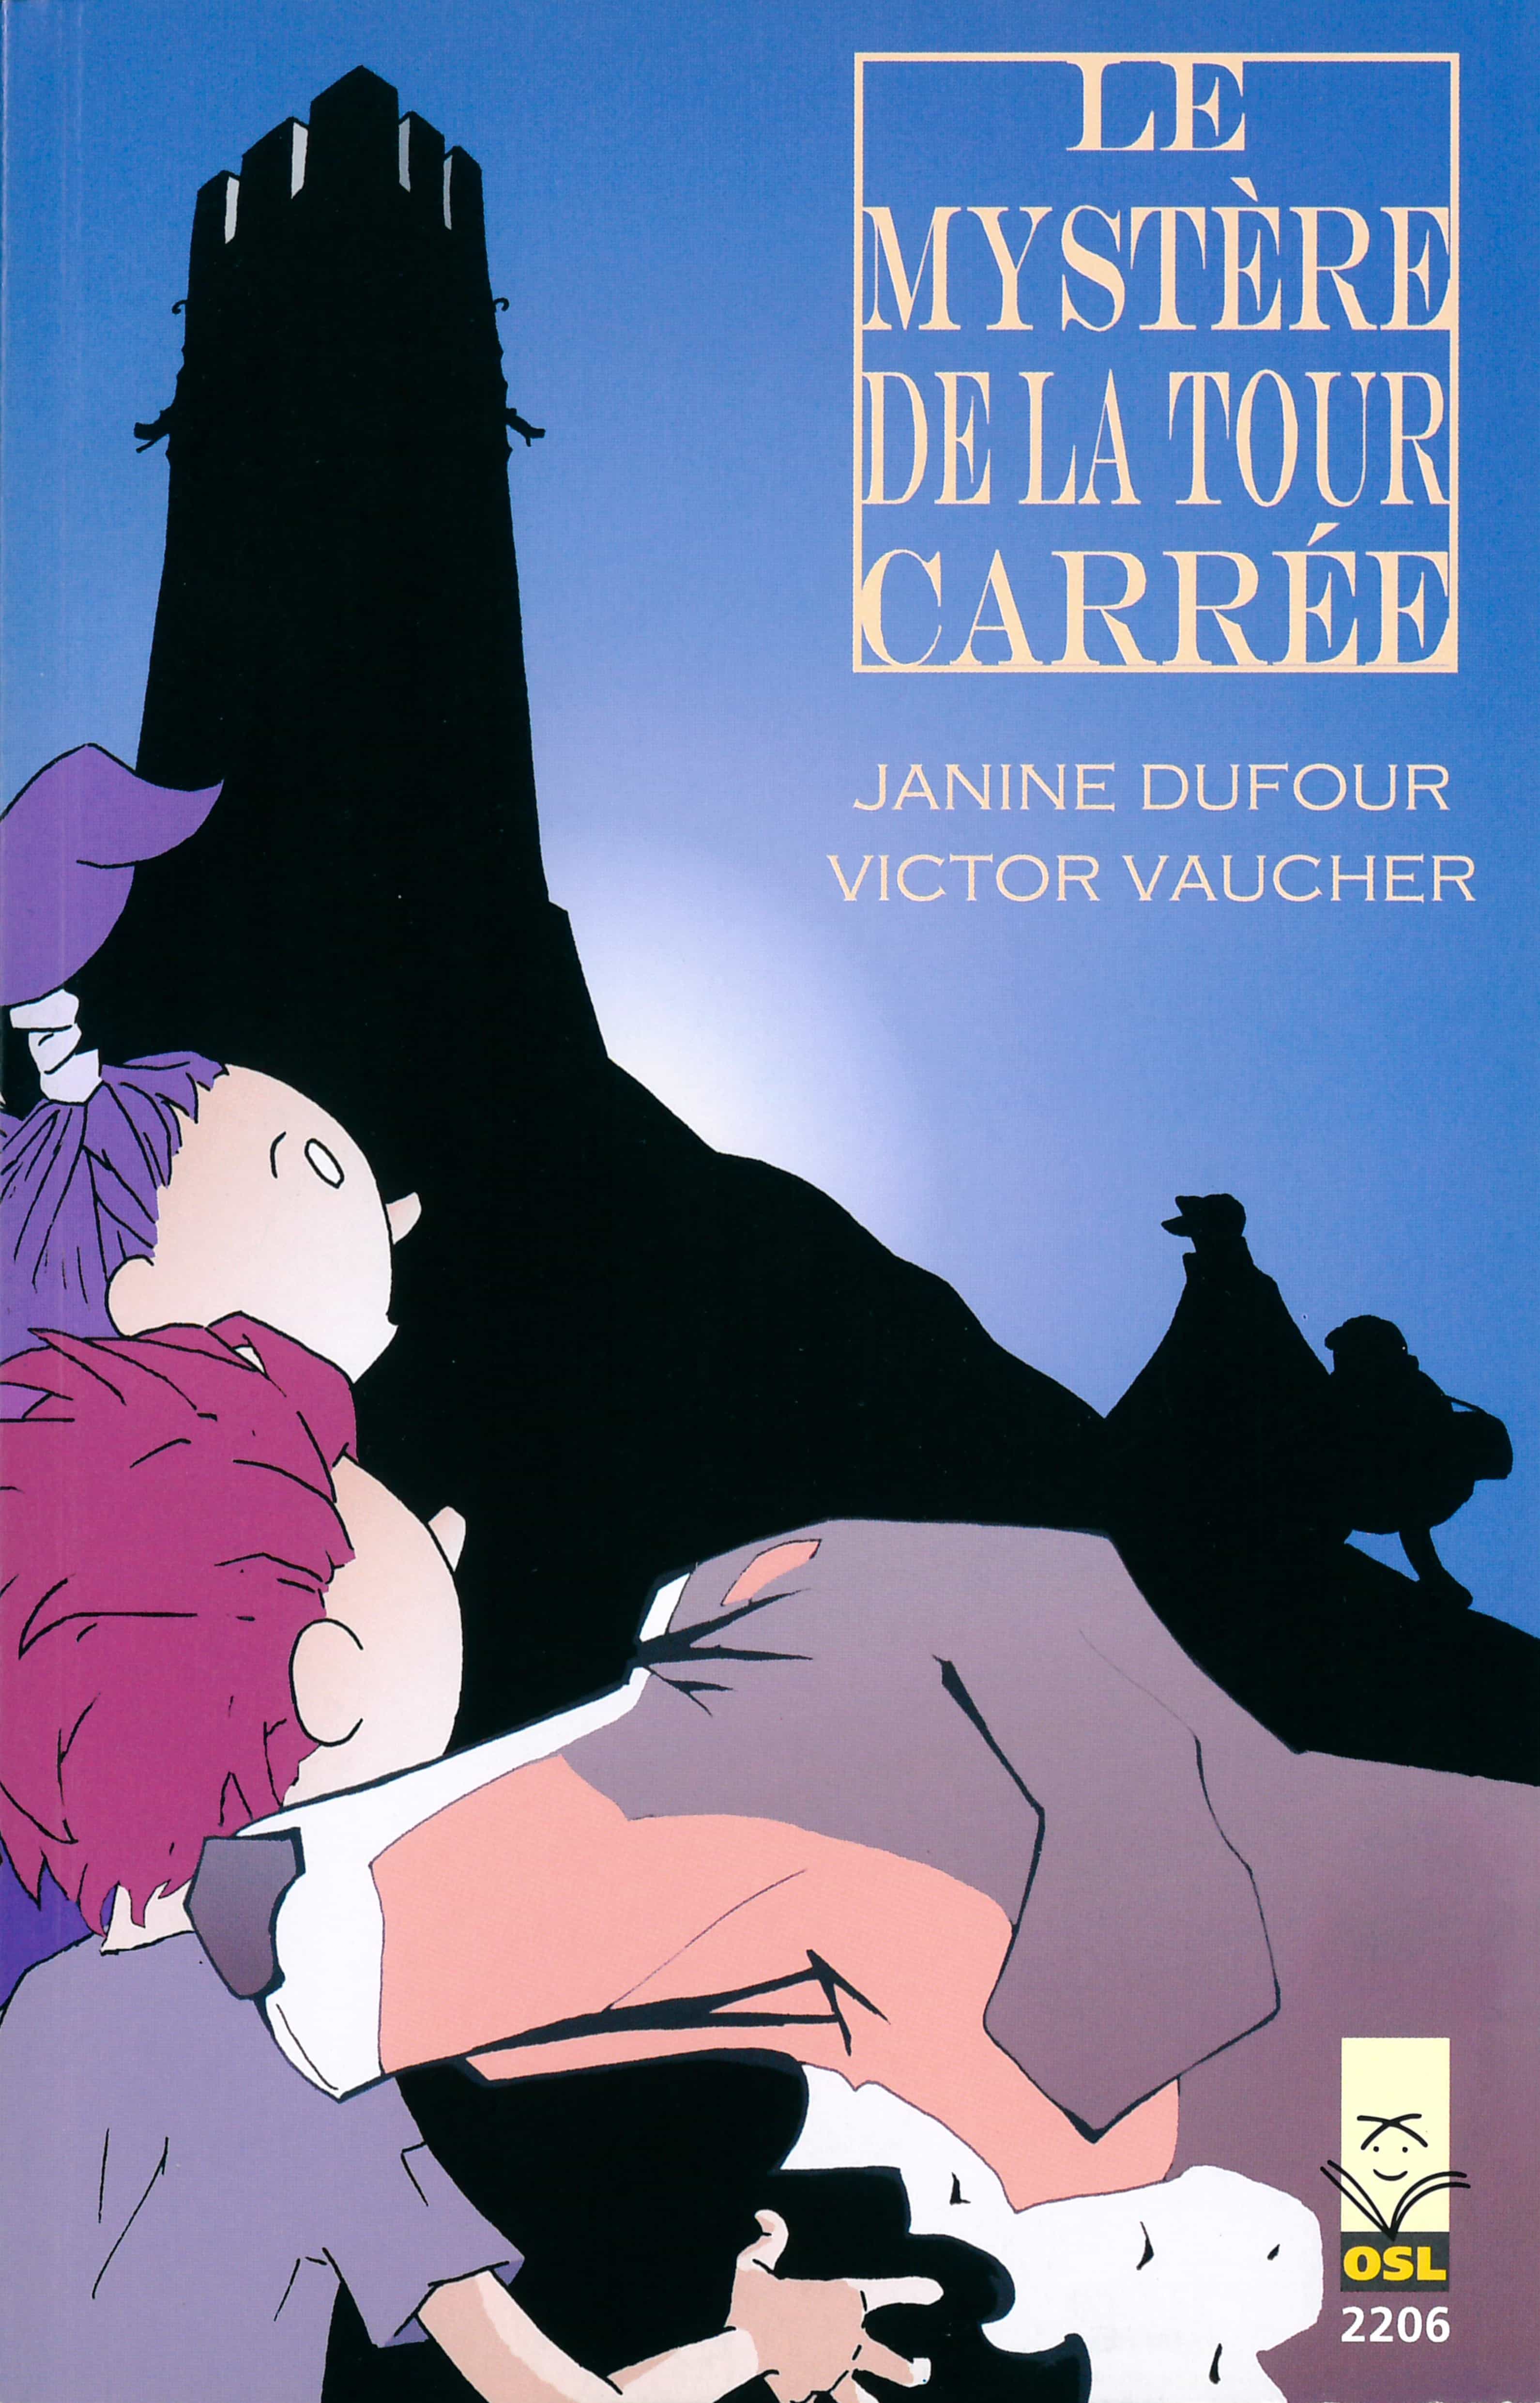 Le mystère de la tour carrée, un livre pour enfants de Dufour Janine et Vaucher Victor, éditions de l'OSL, pirates & voleurs